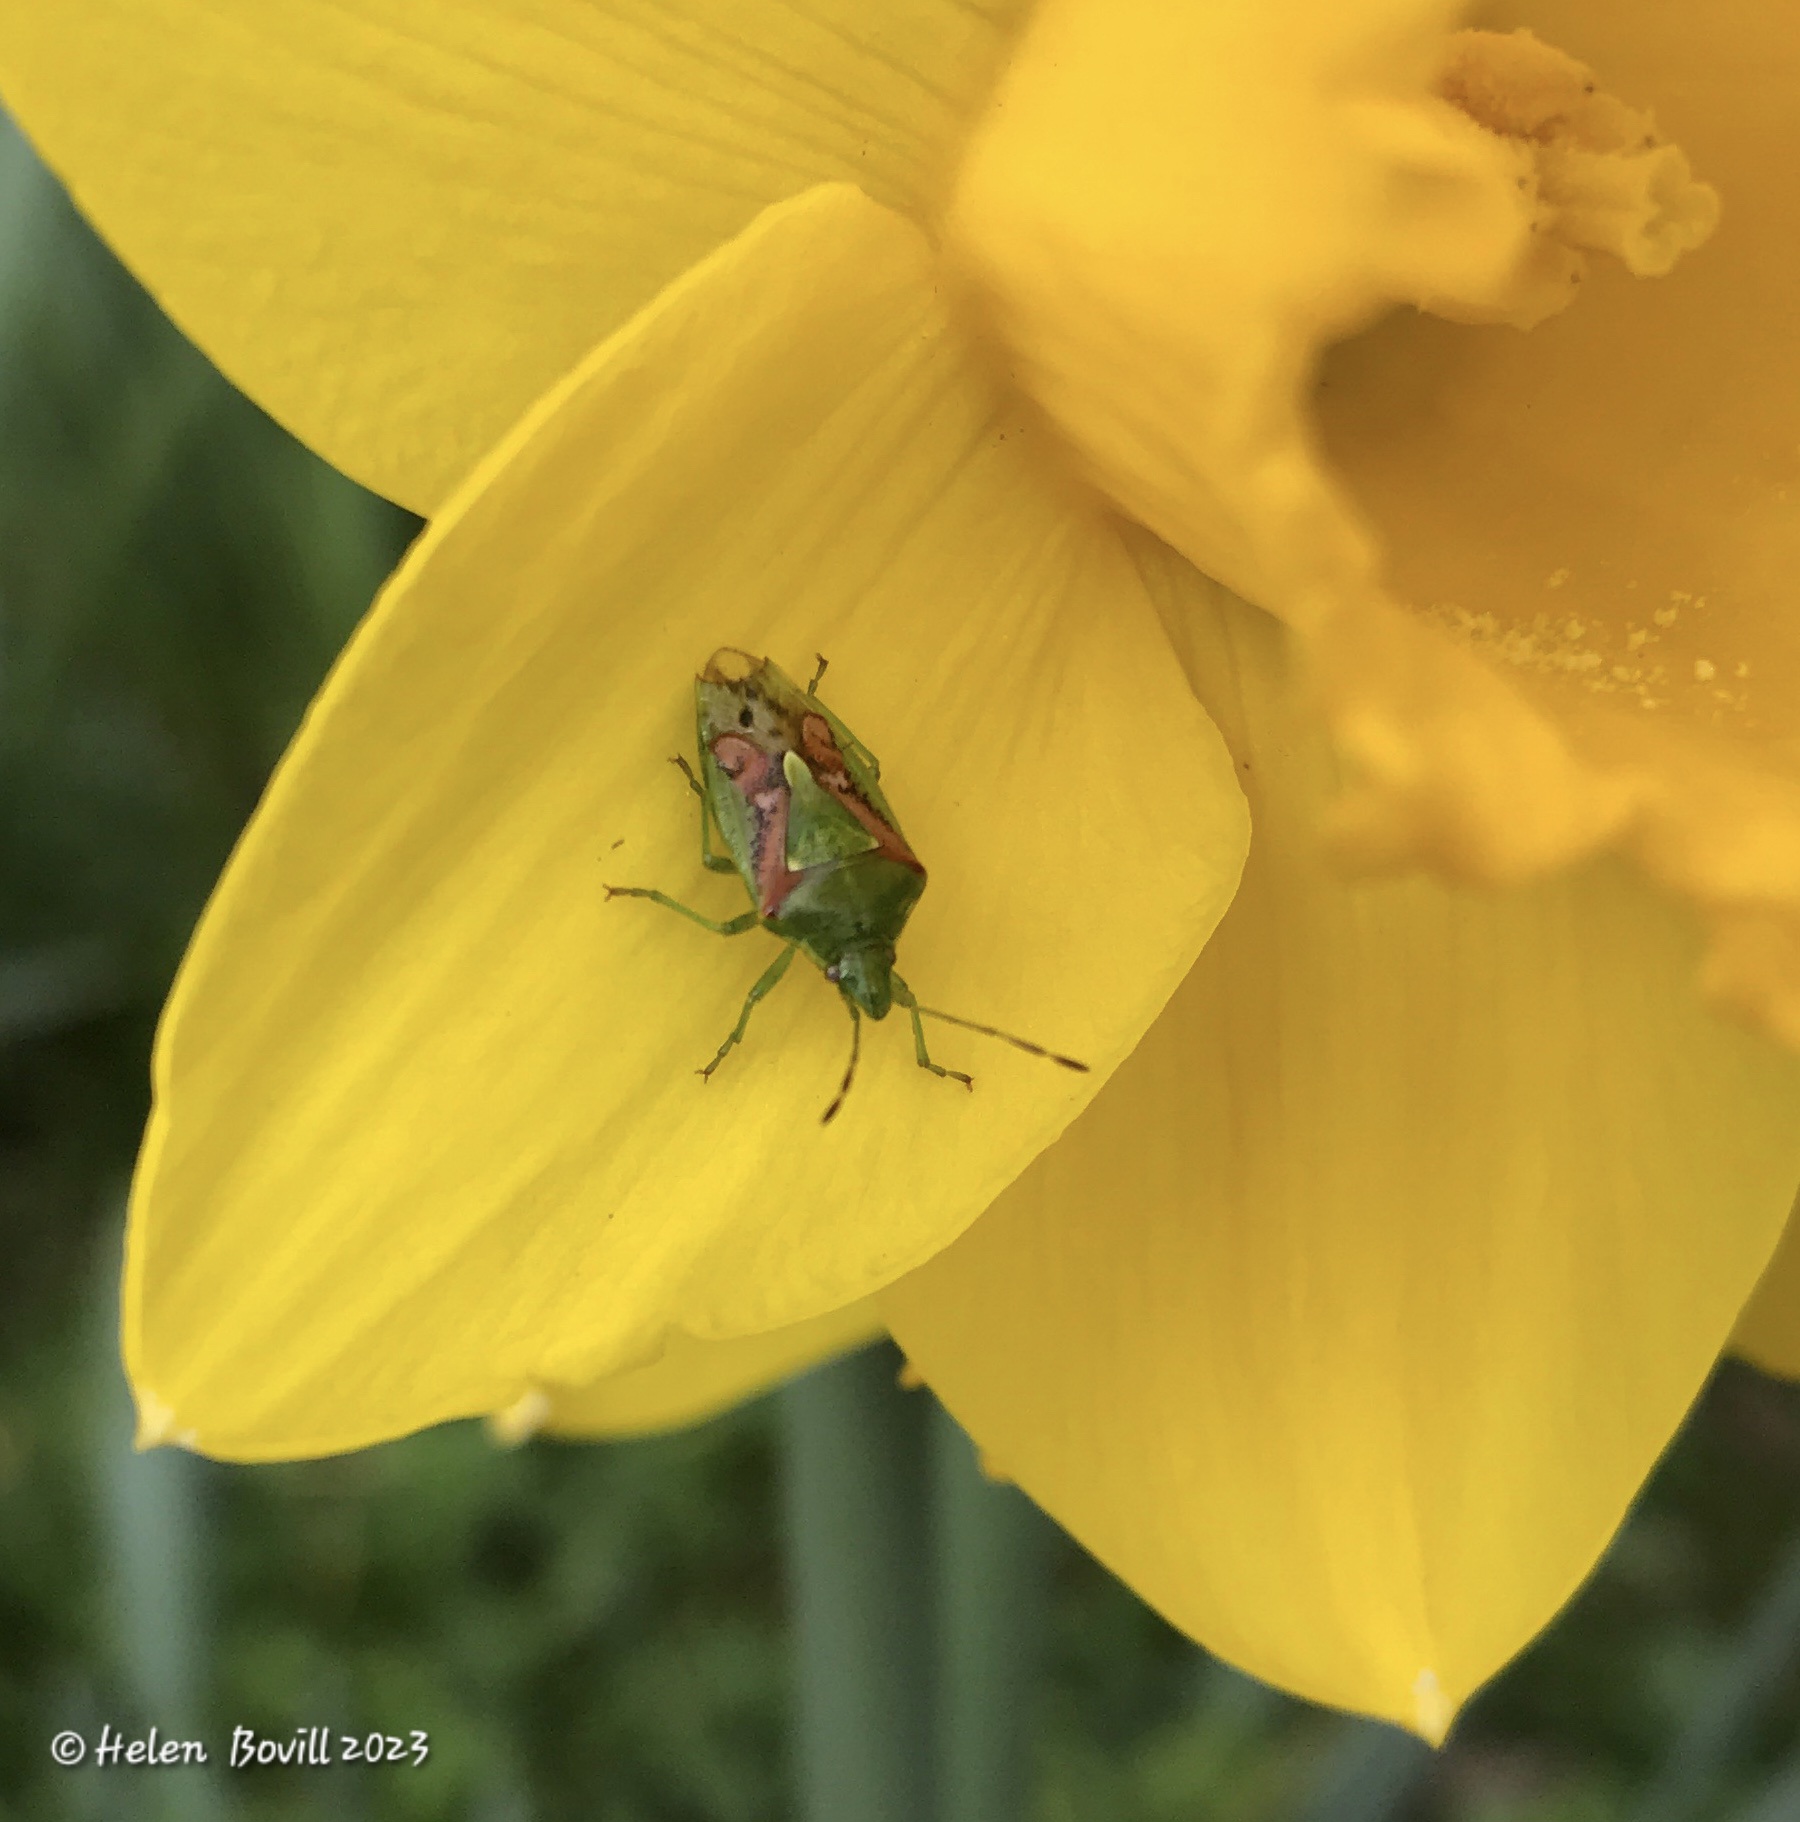 Juniper Shield Bug on a Daffodil